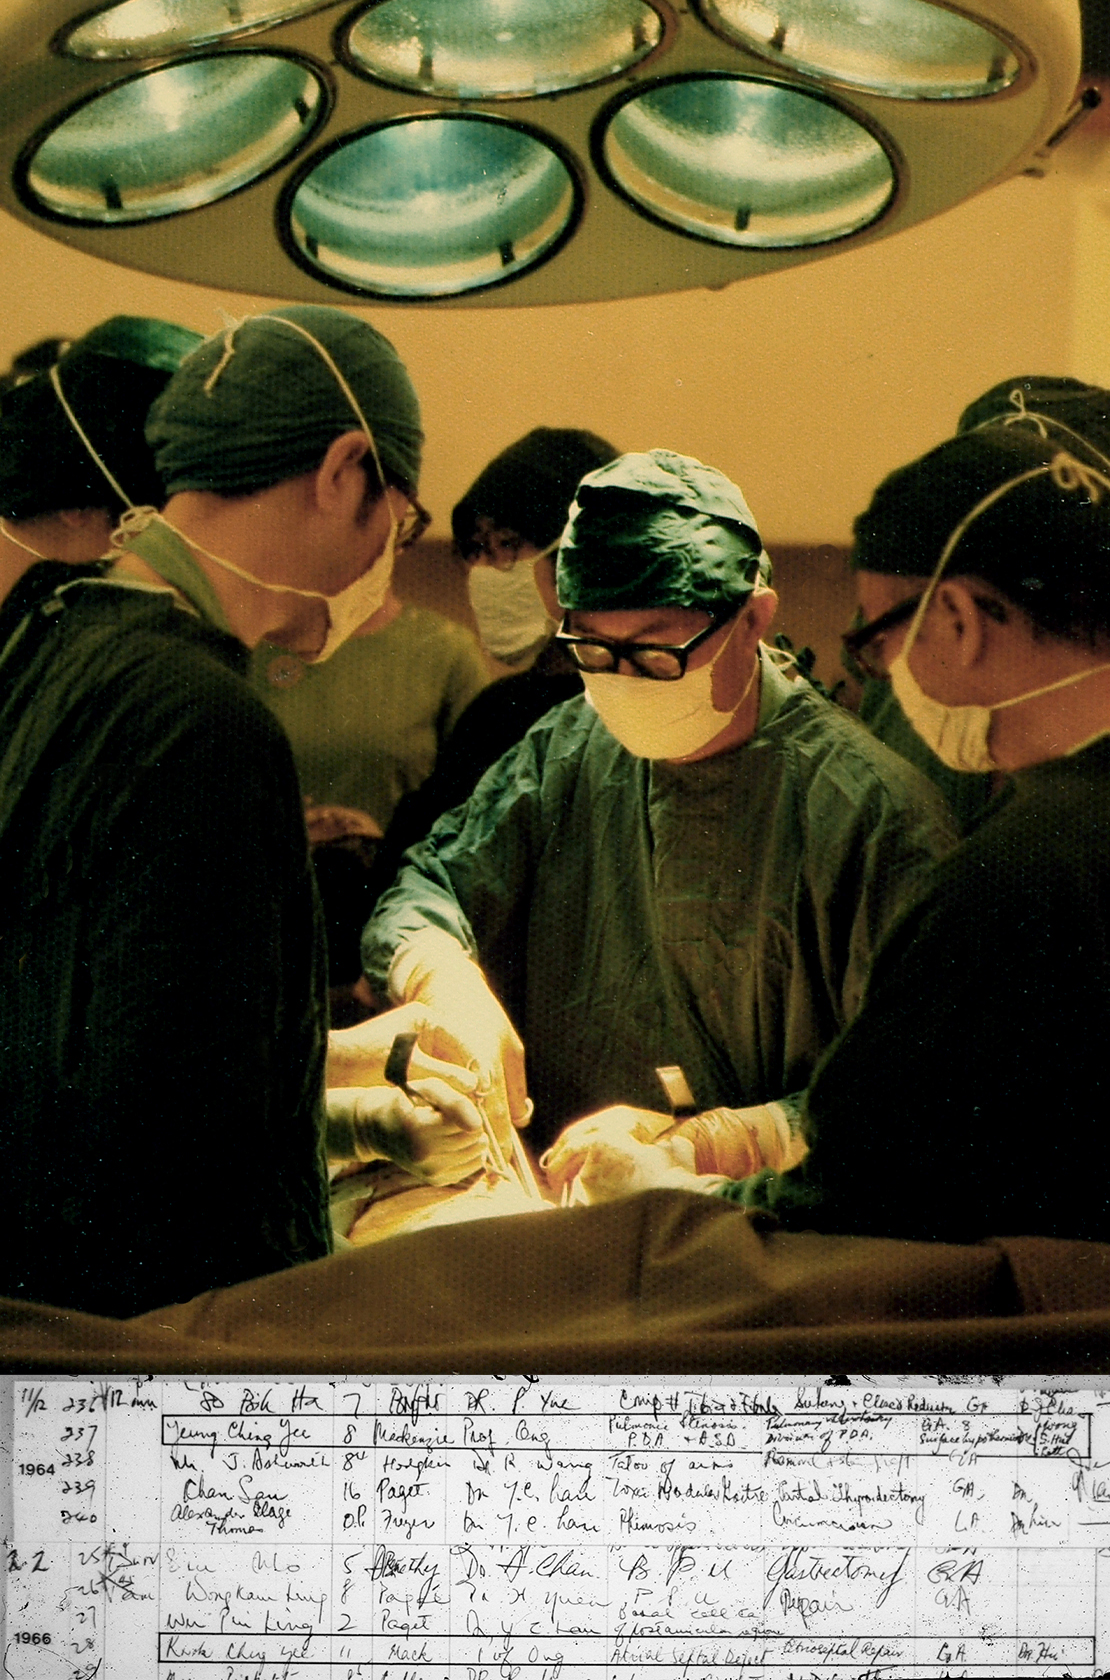 Hong Kong's first open-heart surgery